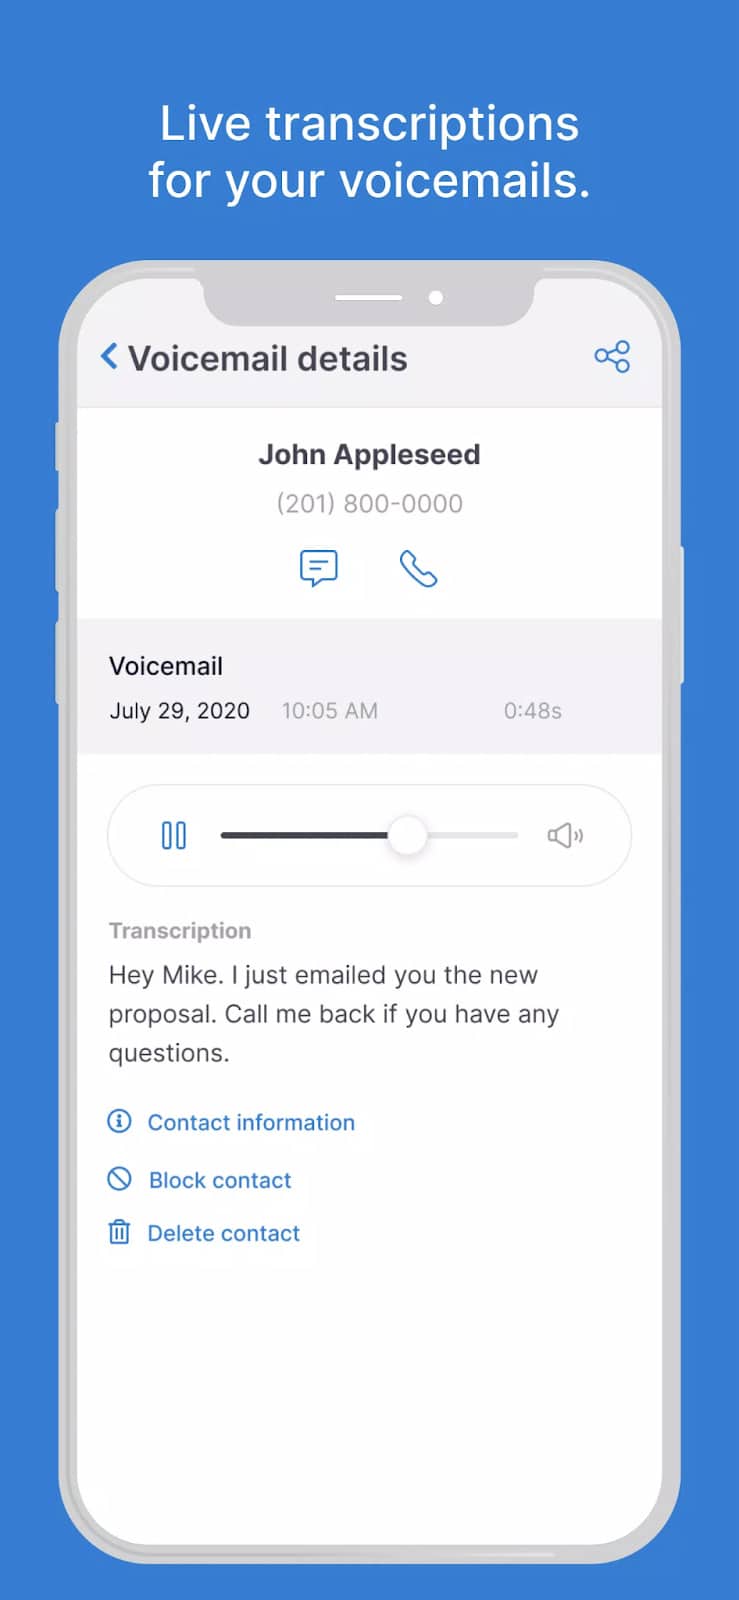 800.com mobile app interface showing a voicemail transcription.